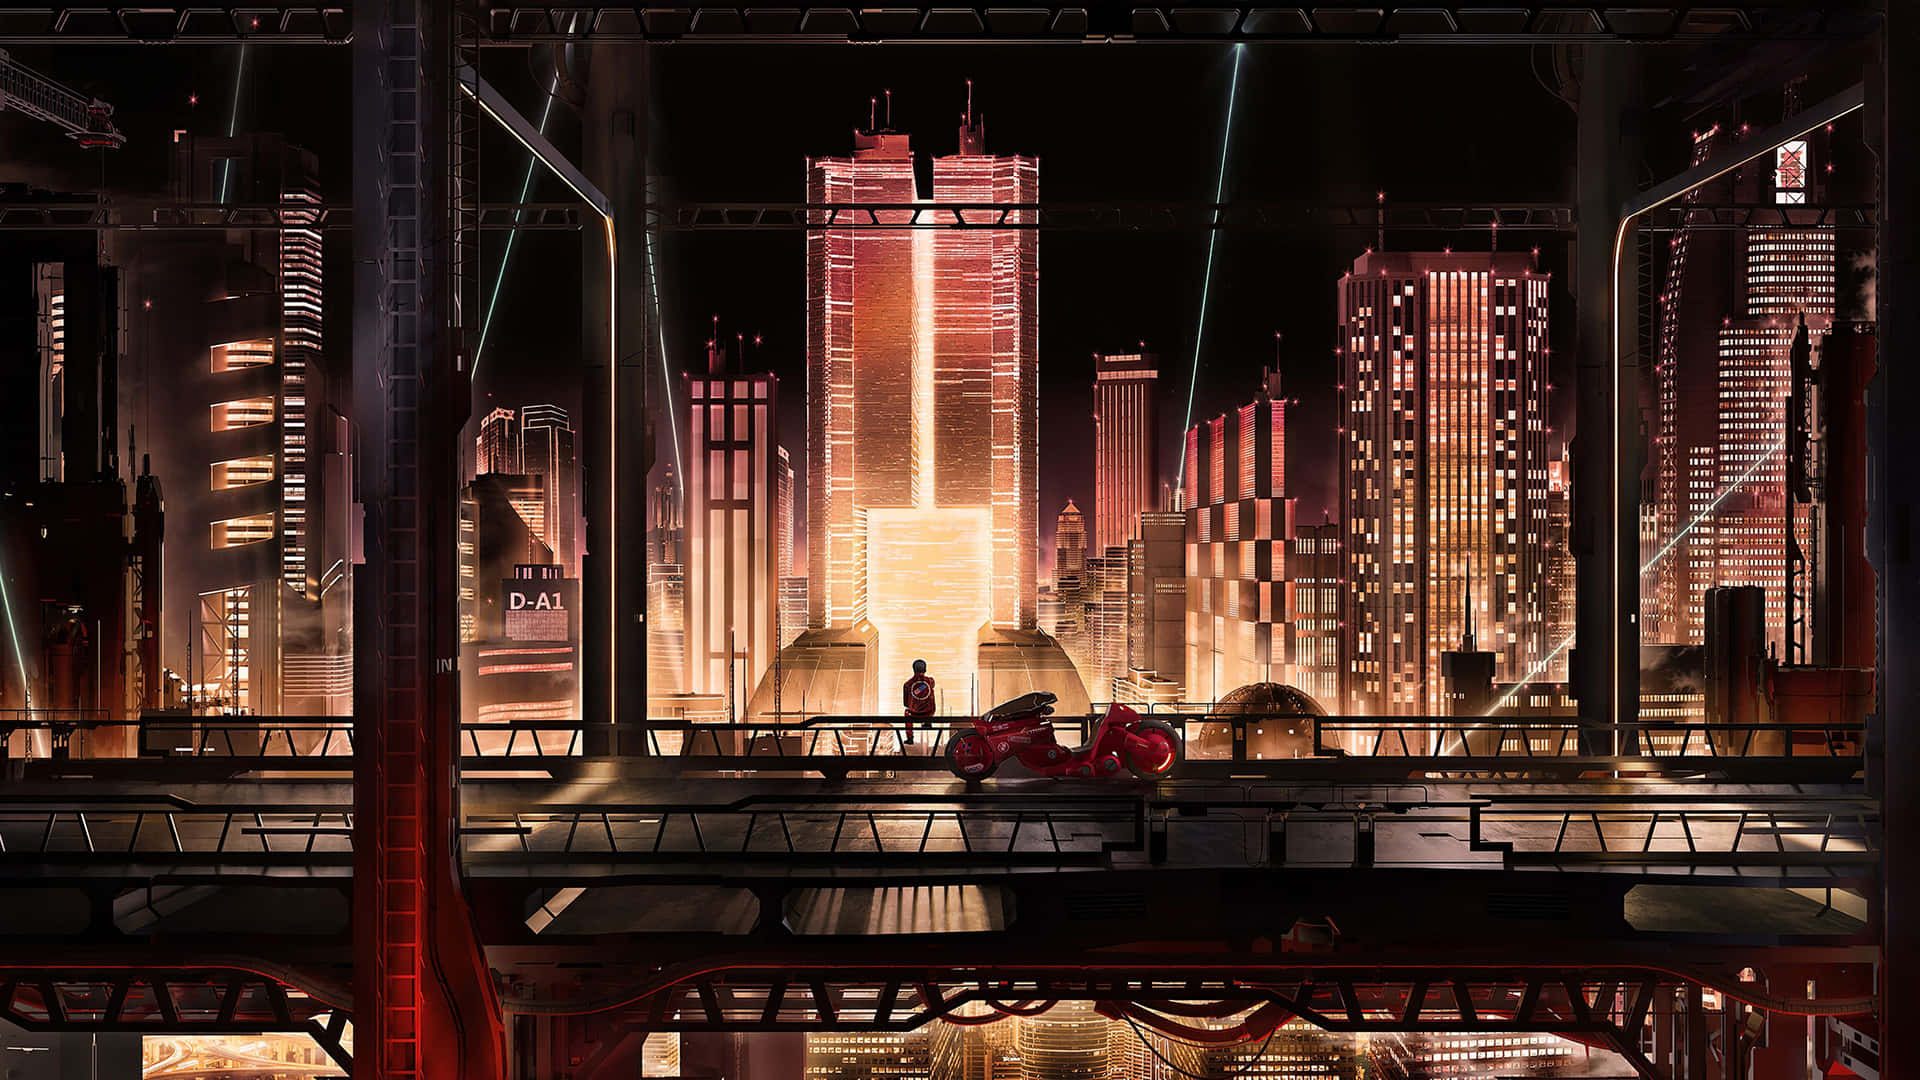 Dreamy Anime Cityscape at Dusk